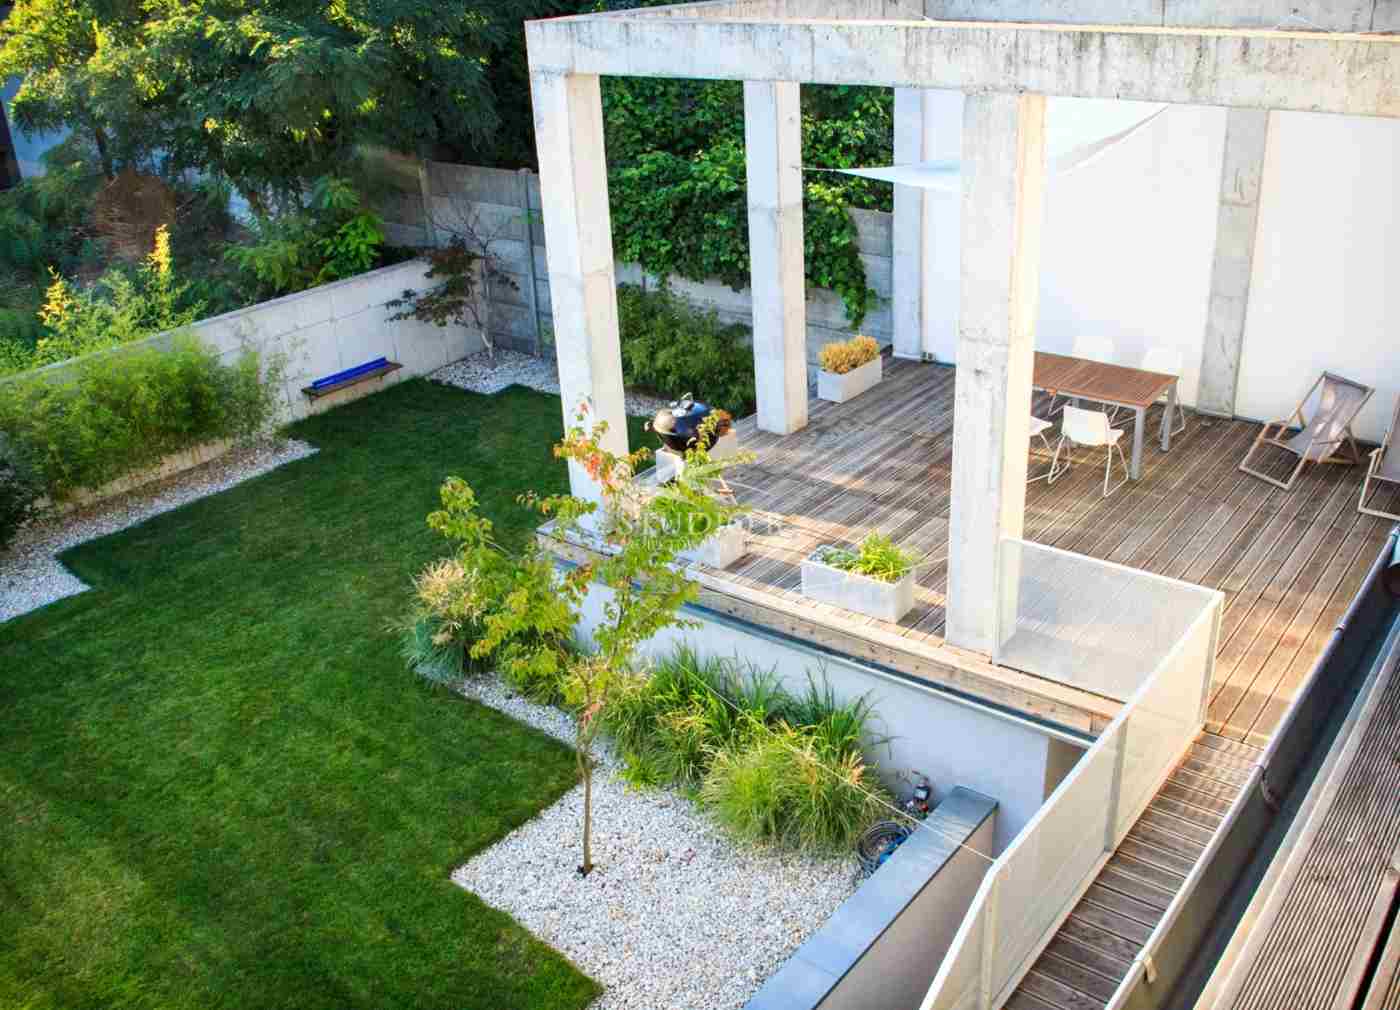 Beton Pergola auf einer Terrasse als moderner Akzent und Kontrast zu Holz